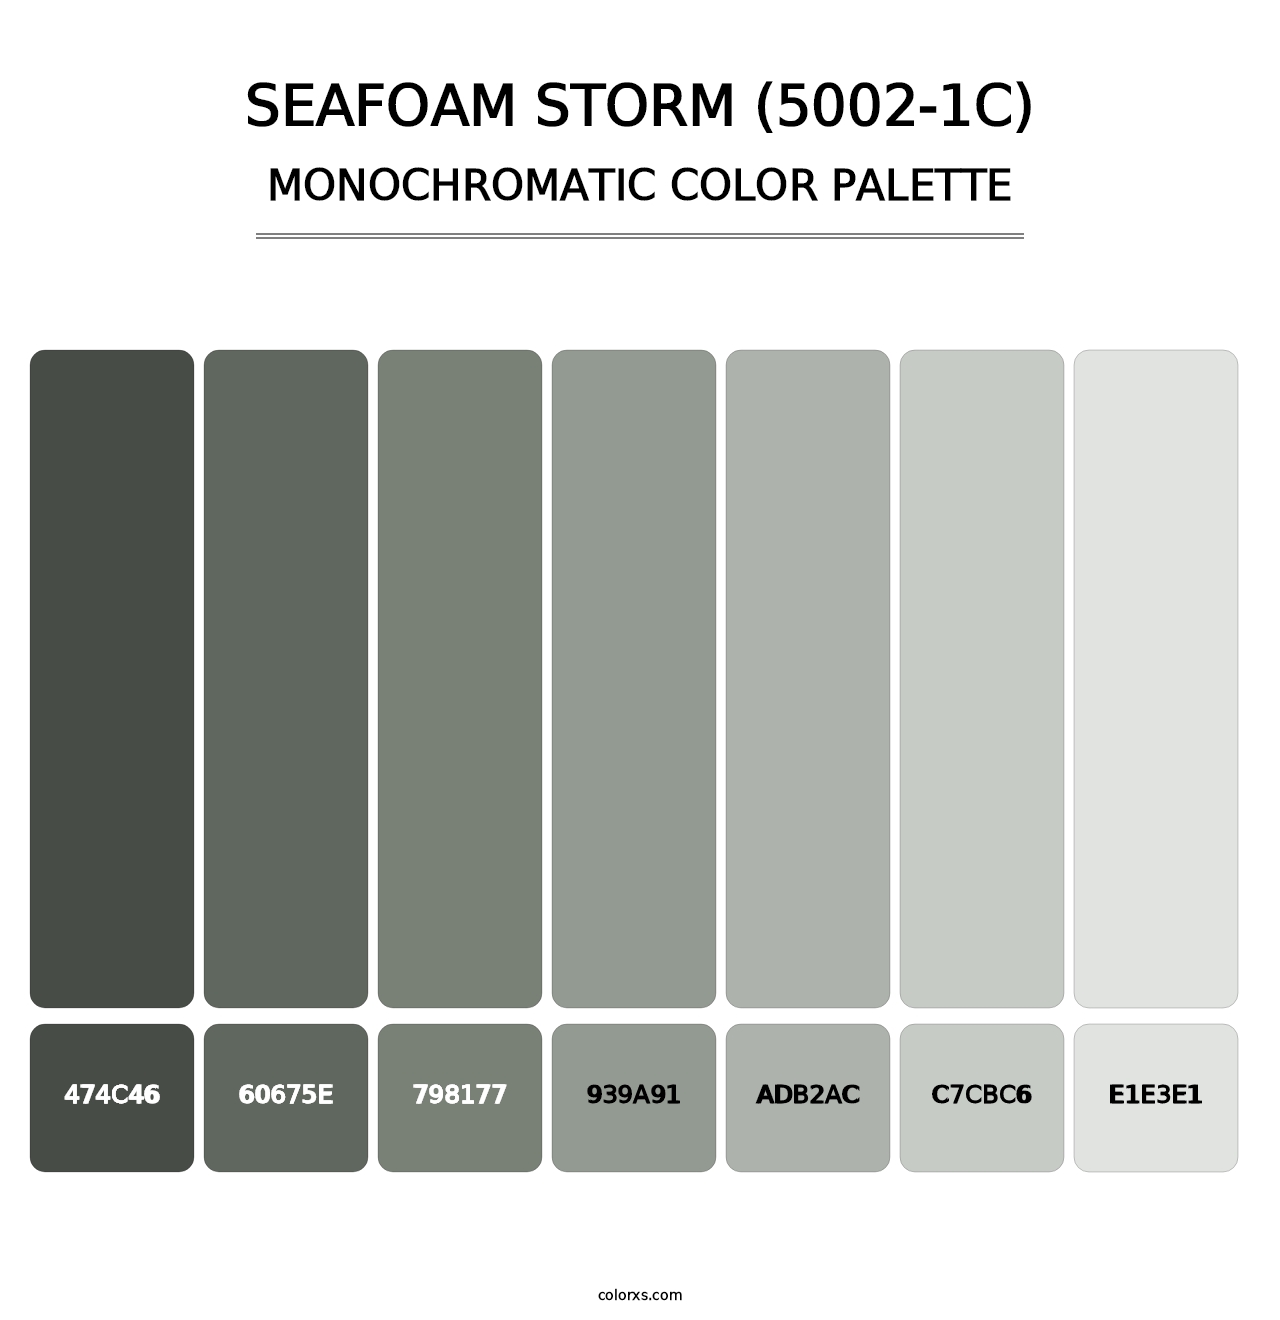 Seafoam Storm (5002-1C) - Monochromatic Color Palette